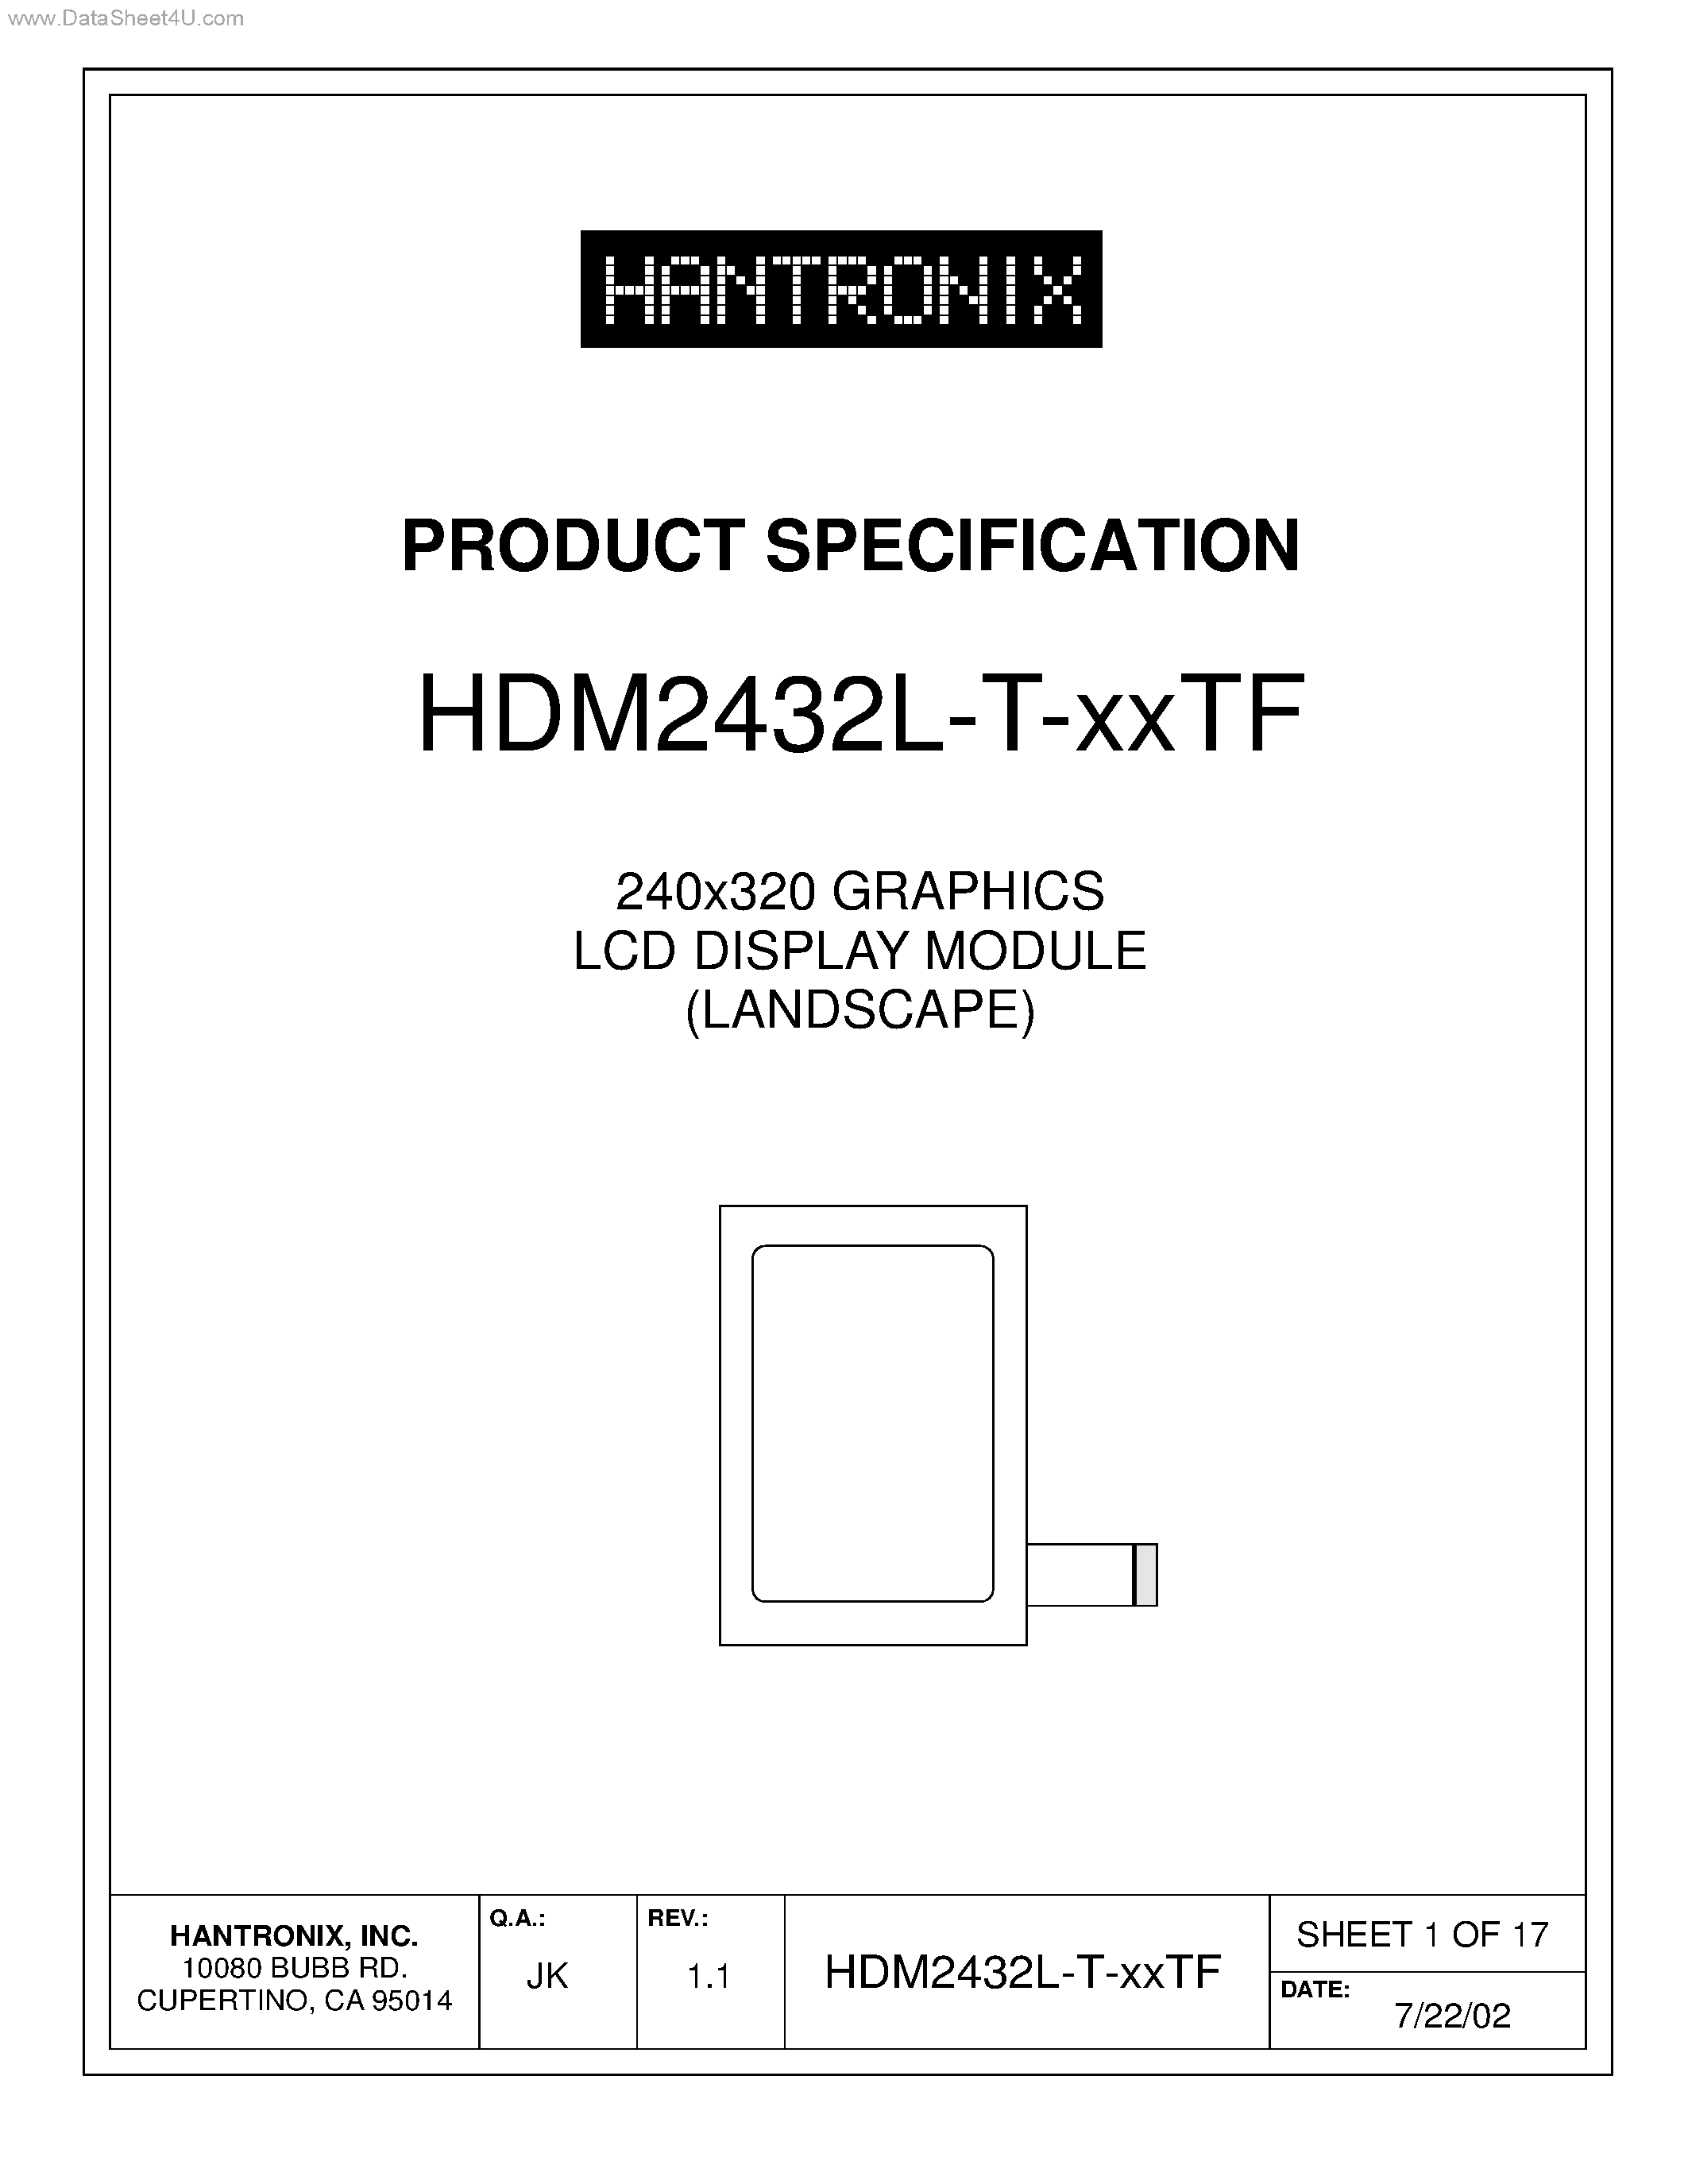 Даташит HDM2432L-T-XXTF - 240x320 GRAPHICS LCD DISPLAY MODULE страница 1